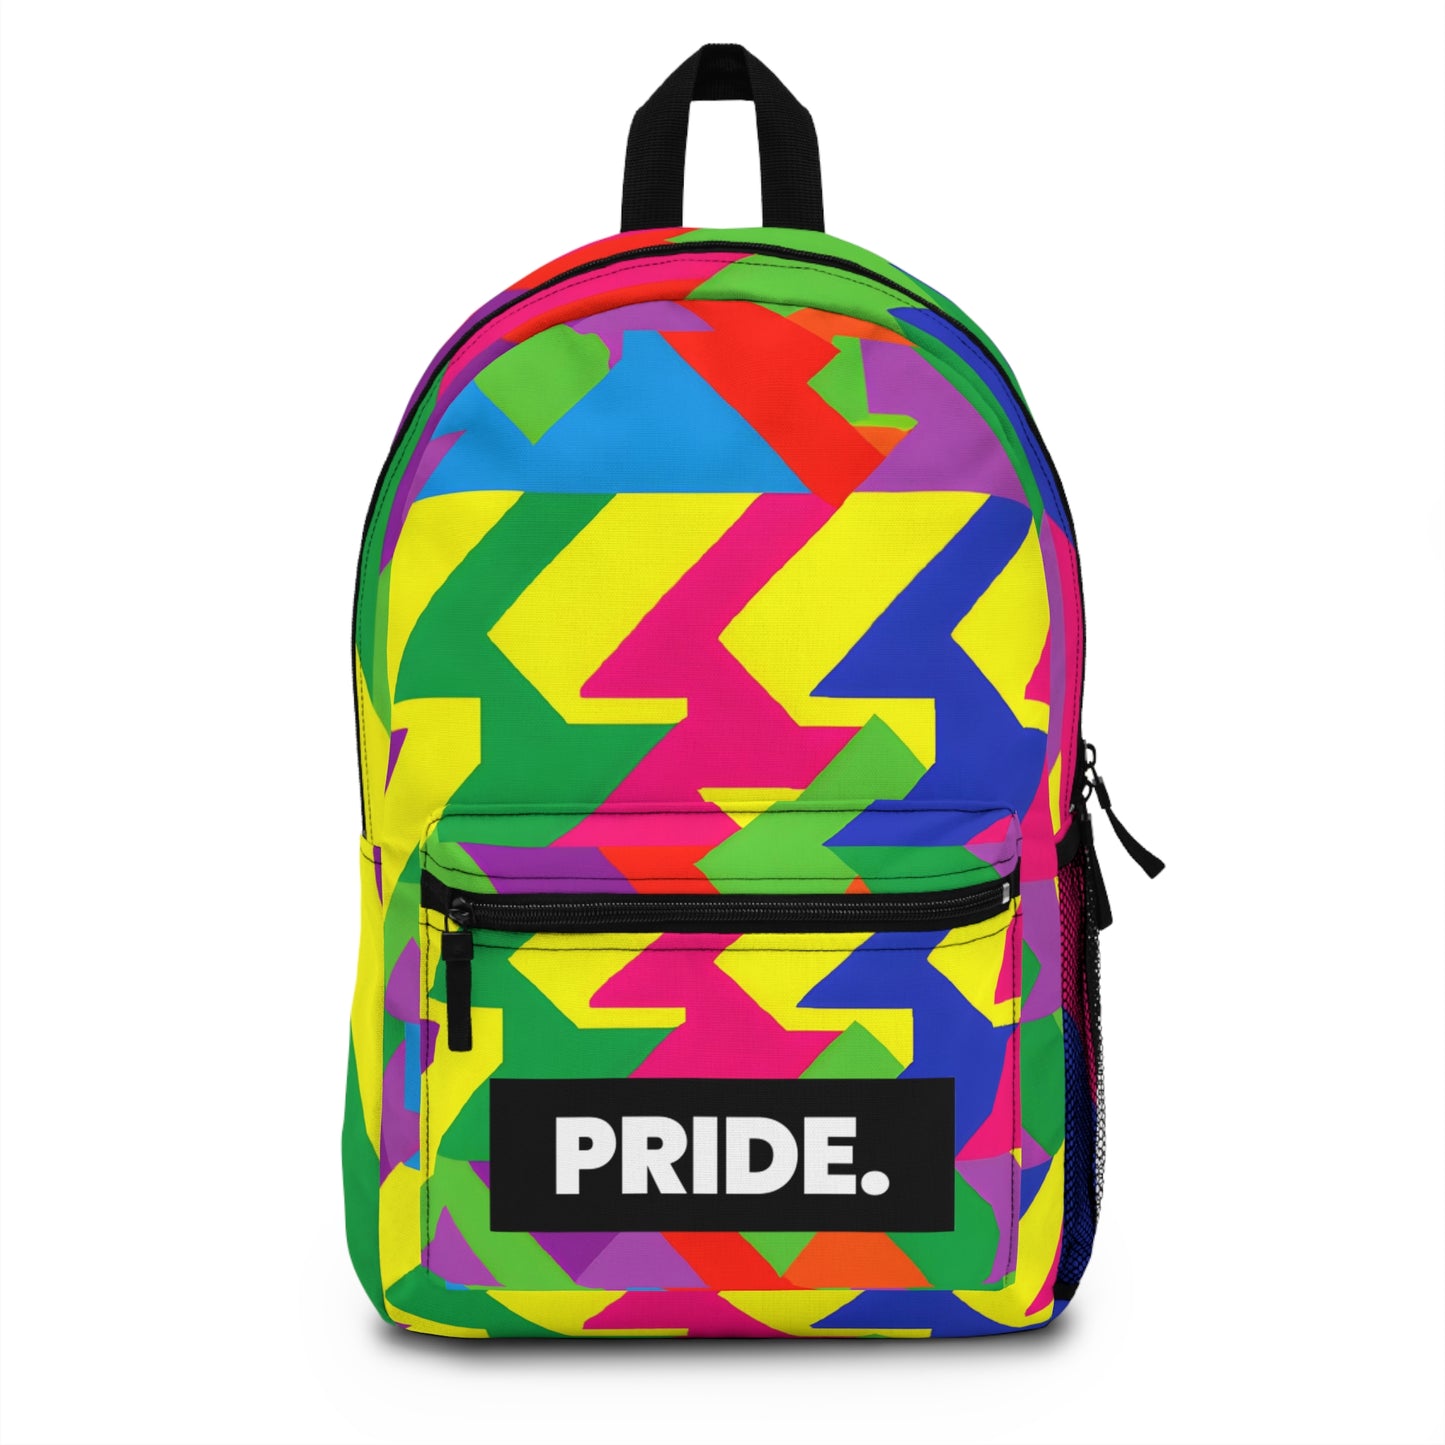 FlambaStyles - Gay Pride Backpack